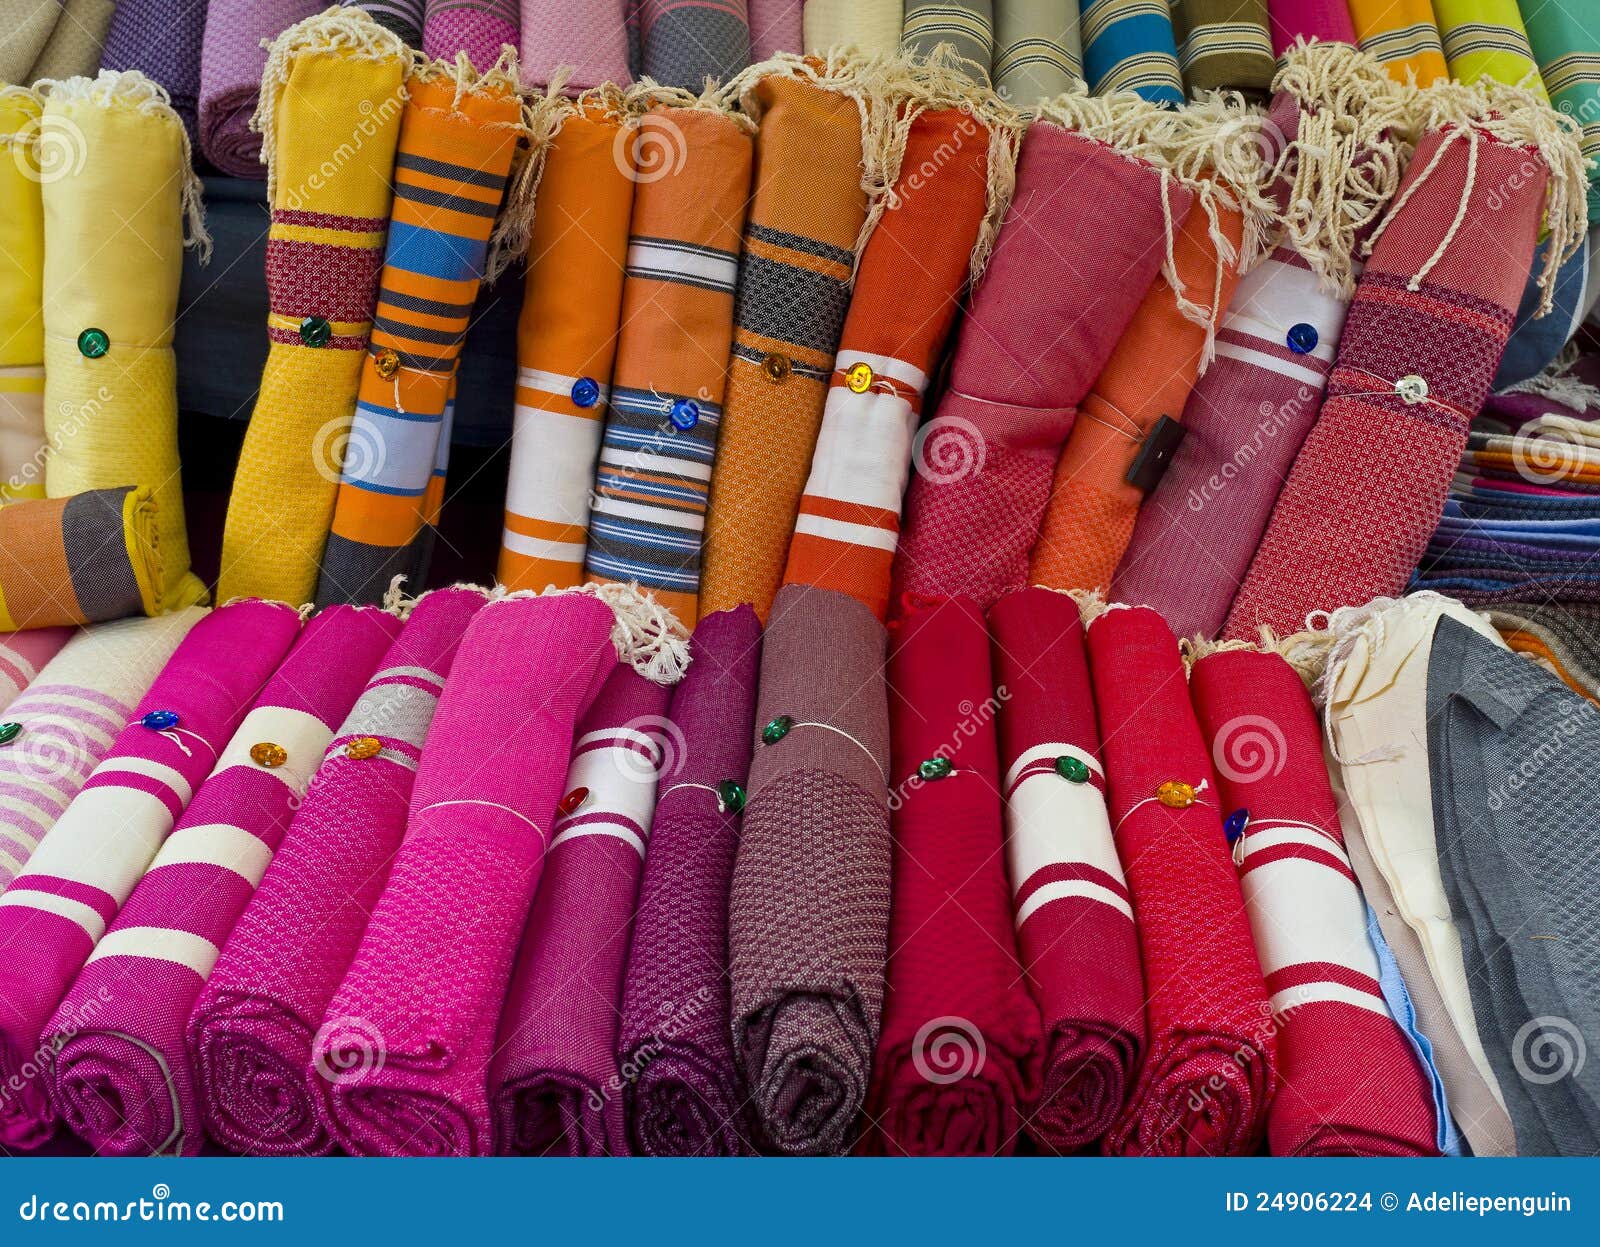 textiles, aix-en-provence france